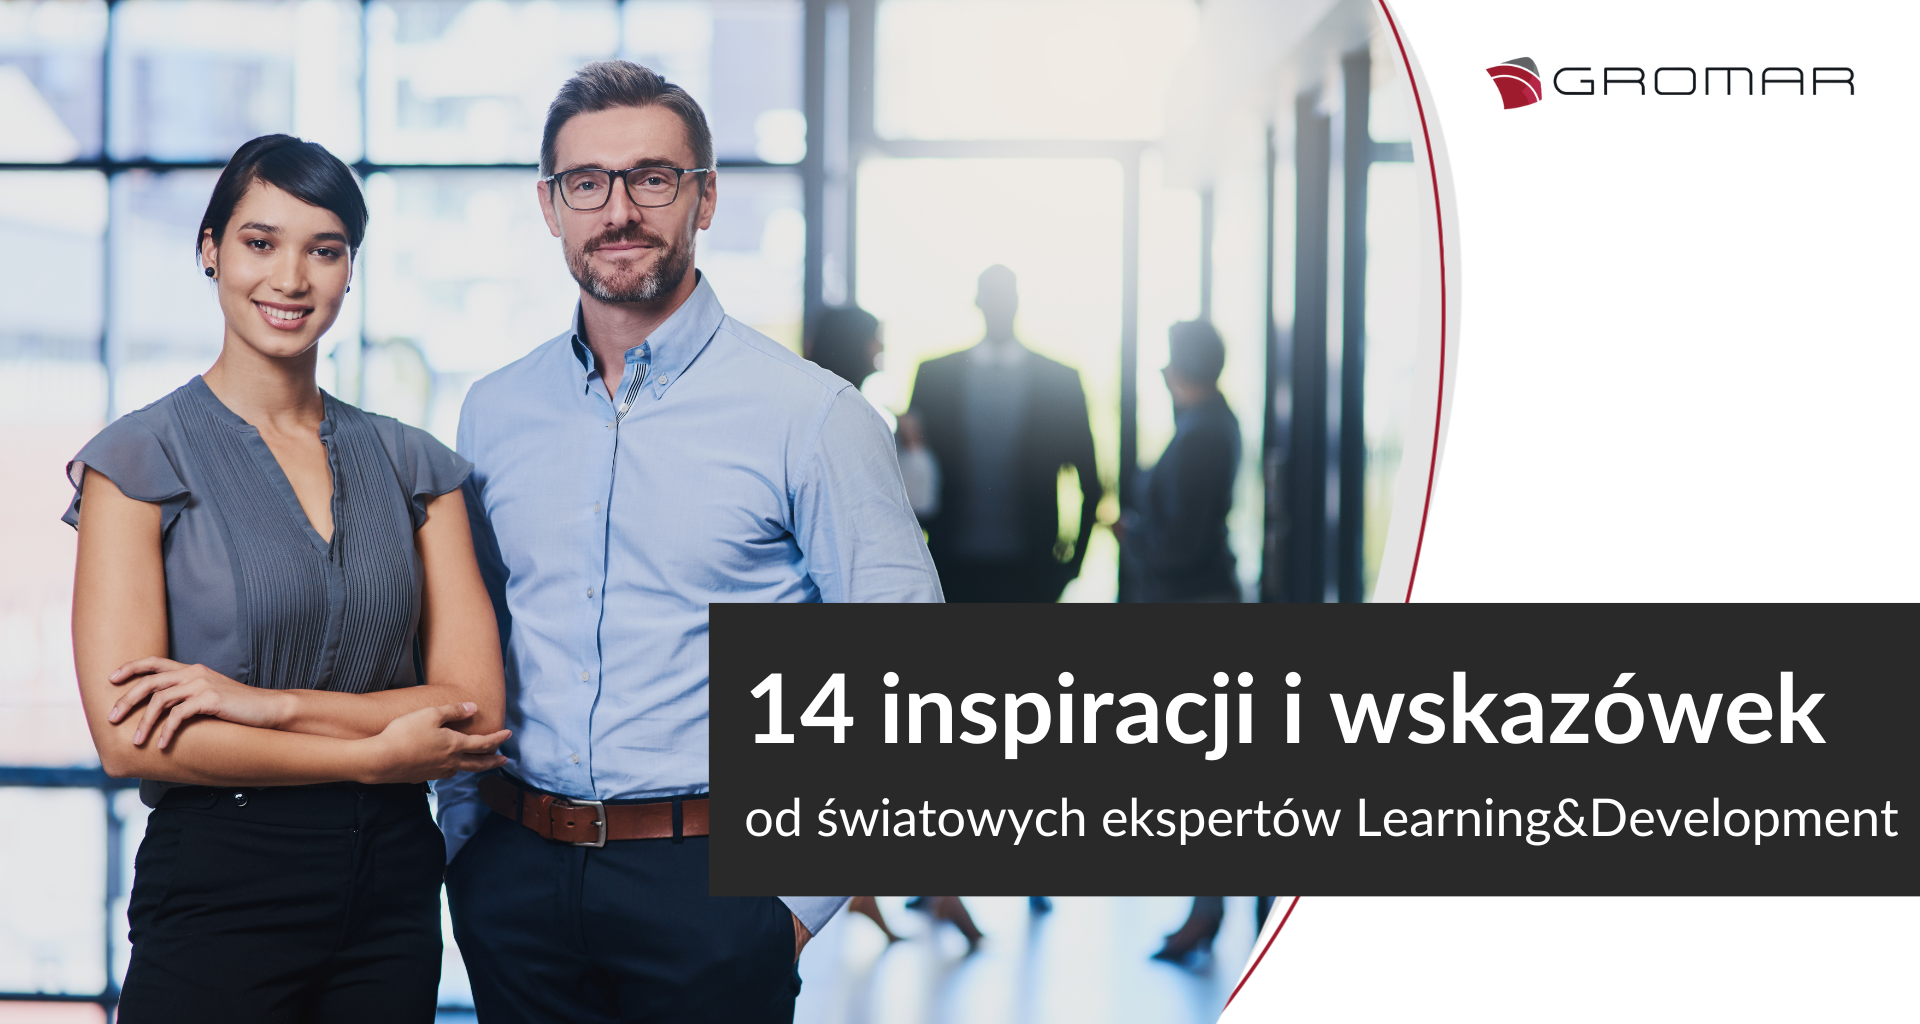 14 inspiracji i wskazówek od światowych ekspertów L&D cz. II